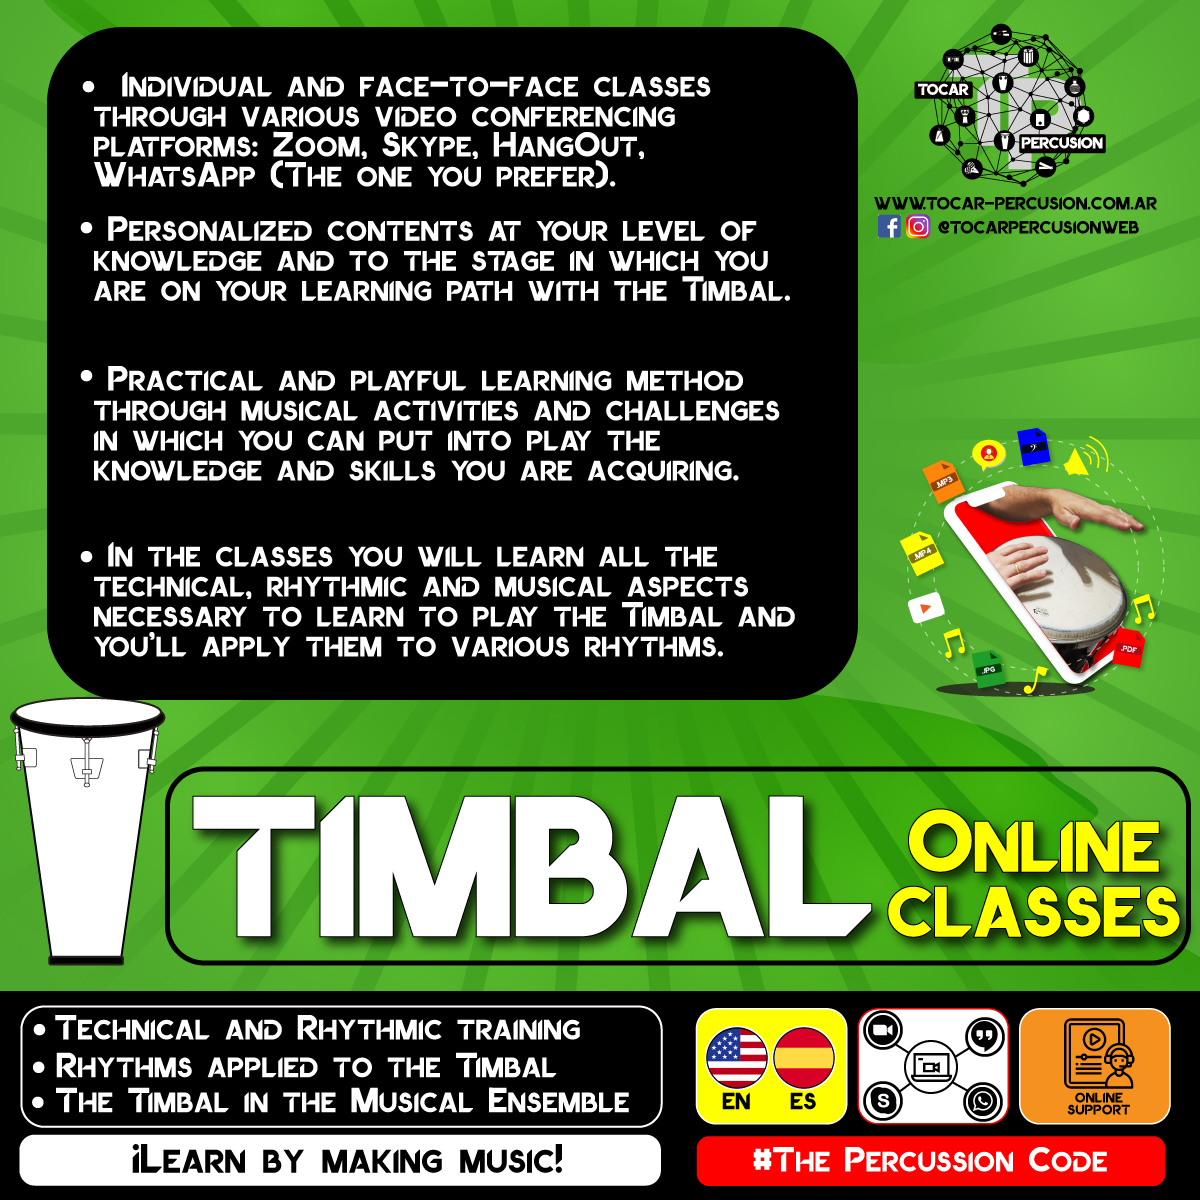 Timbal brasilero clases online